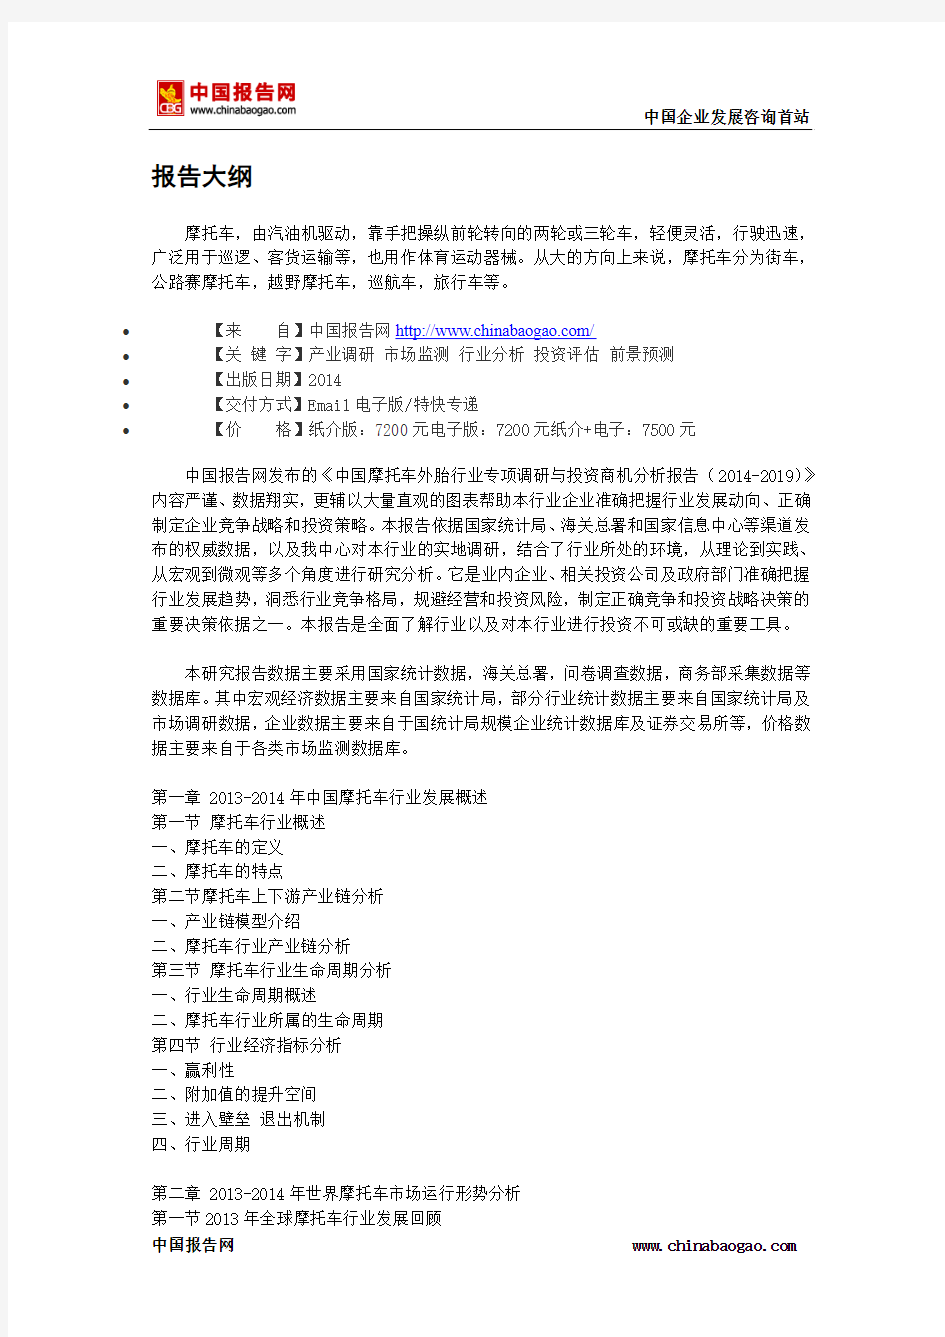 中国摩托车外胎行业专项调研与投资商机分析报告(2014-2019)